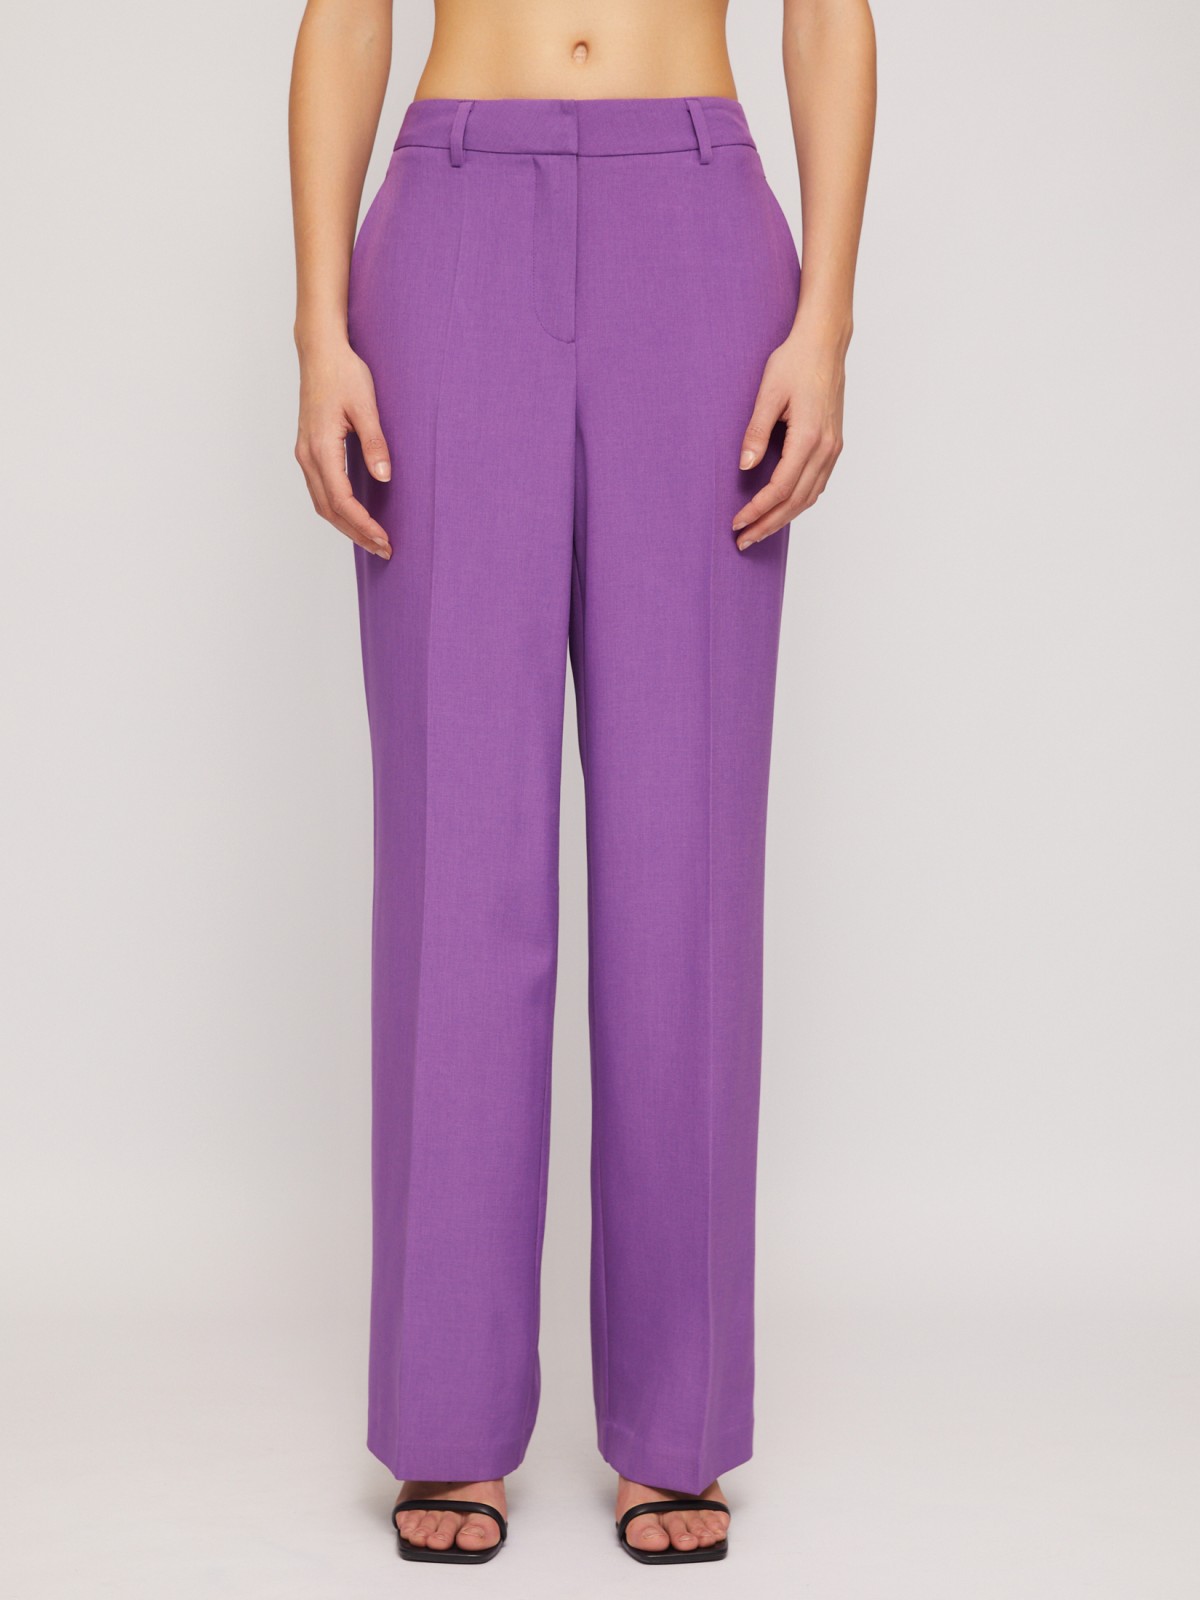 Классические прямые брюки со стрелками zolla 024247350063, цвет фиолетовый, размер XS - фото 4